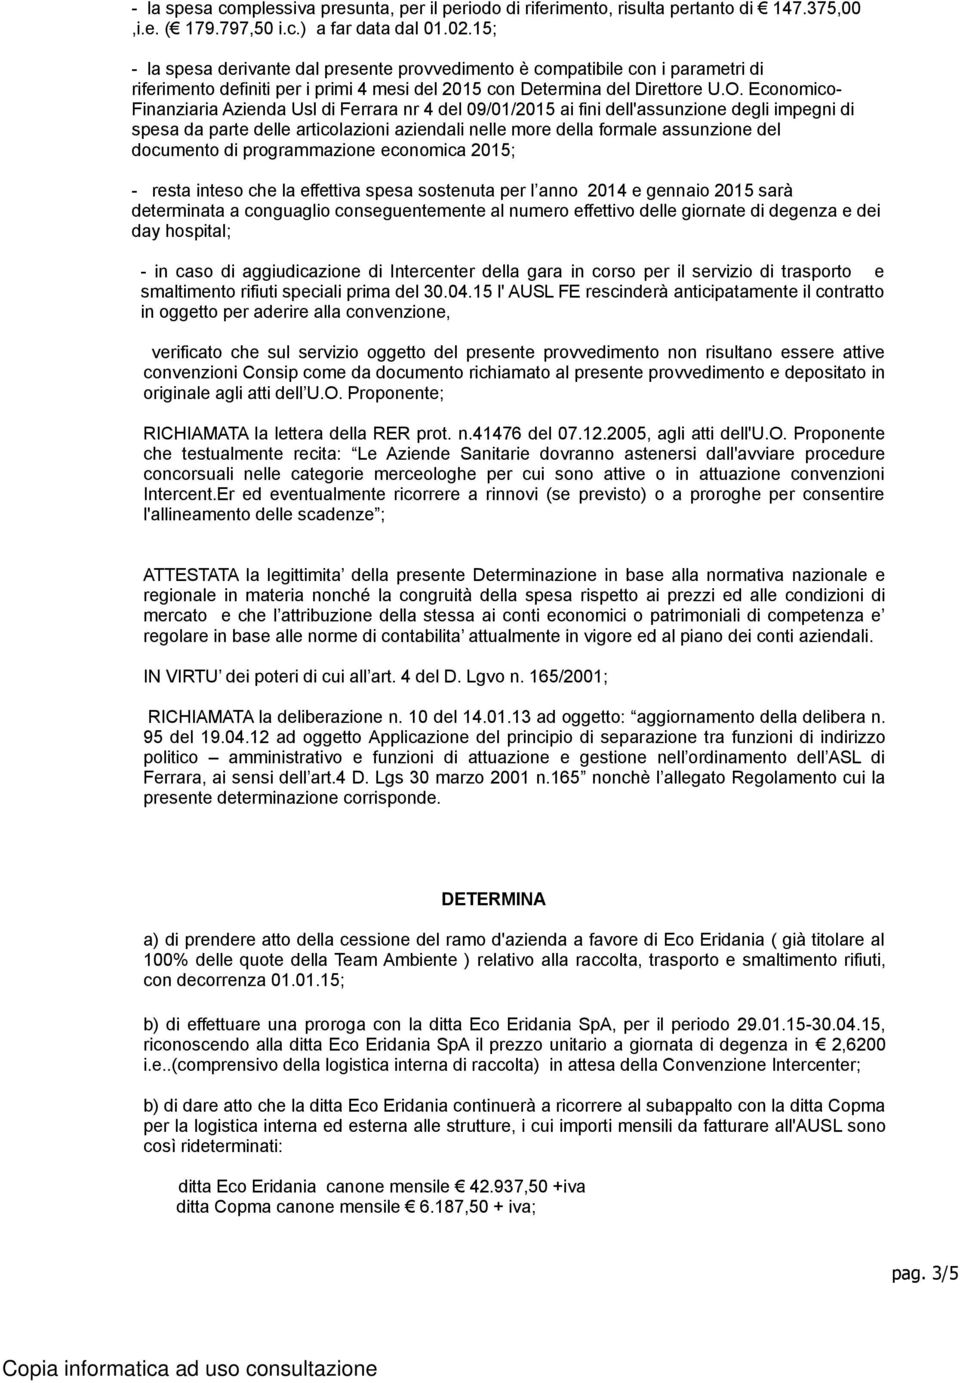 Economico- Finanziaria Azienda Usl di Ferrara nr 4 del 09/01/2015 ai fini dell'assunzione degli impegni di spesa da parte delle articolazioni aziendali nelle more della formale assunzione del